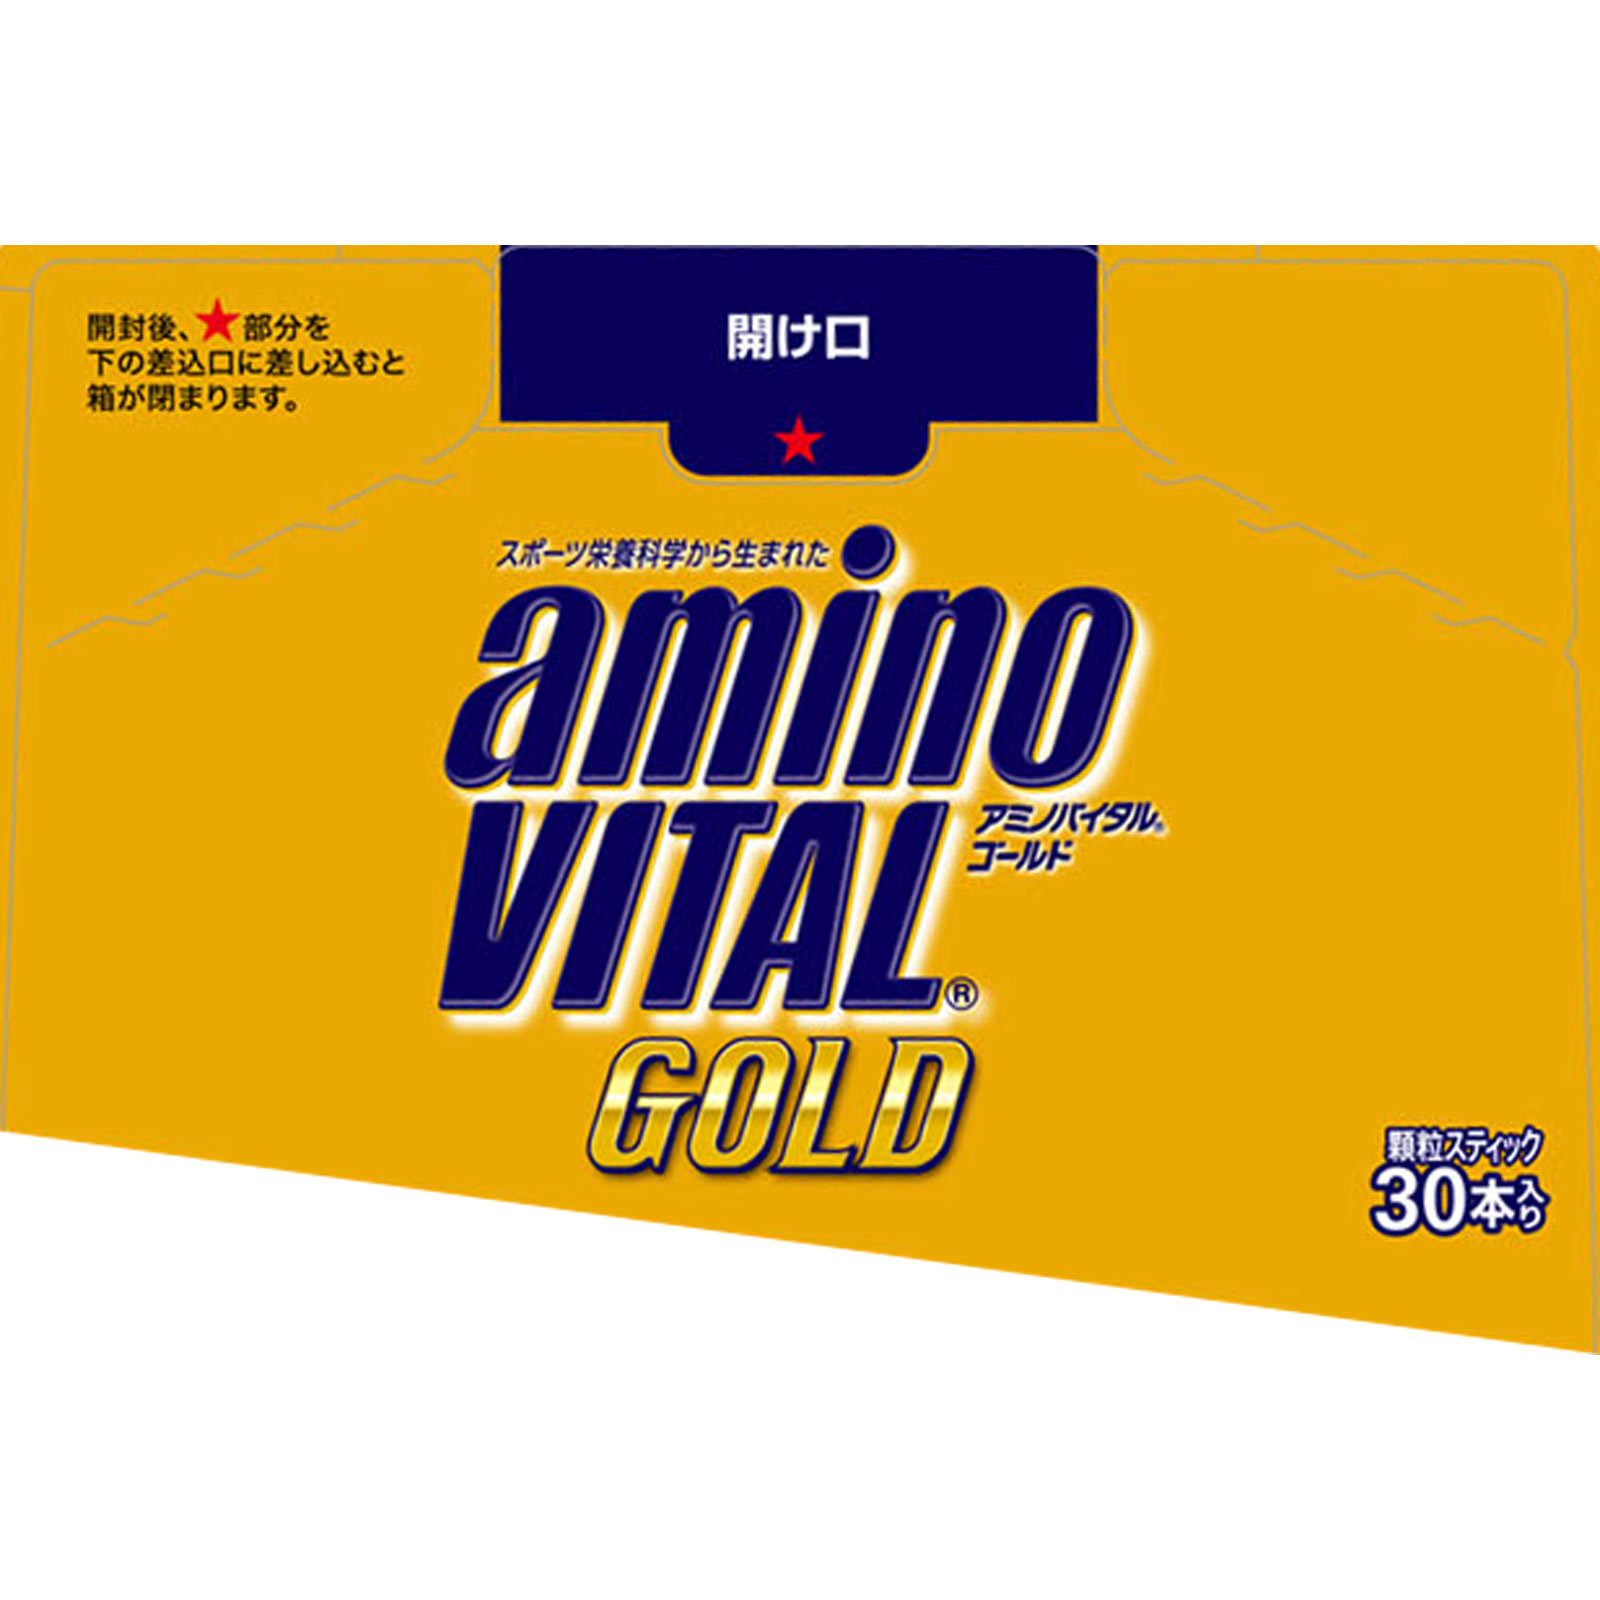 アミノバイタル GOLD | マツキヨココカラオンラインストア